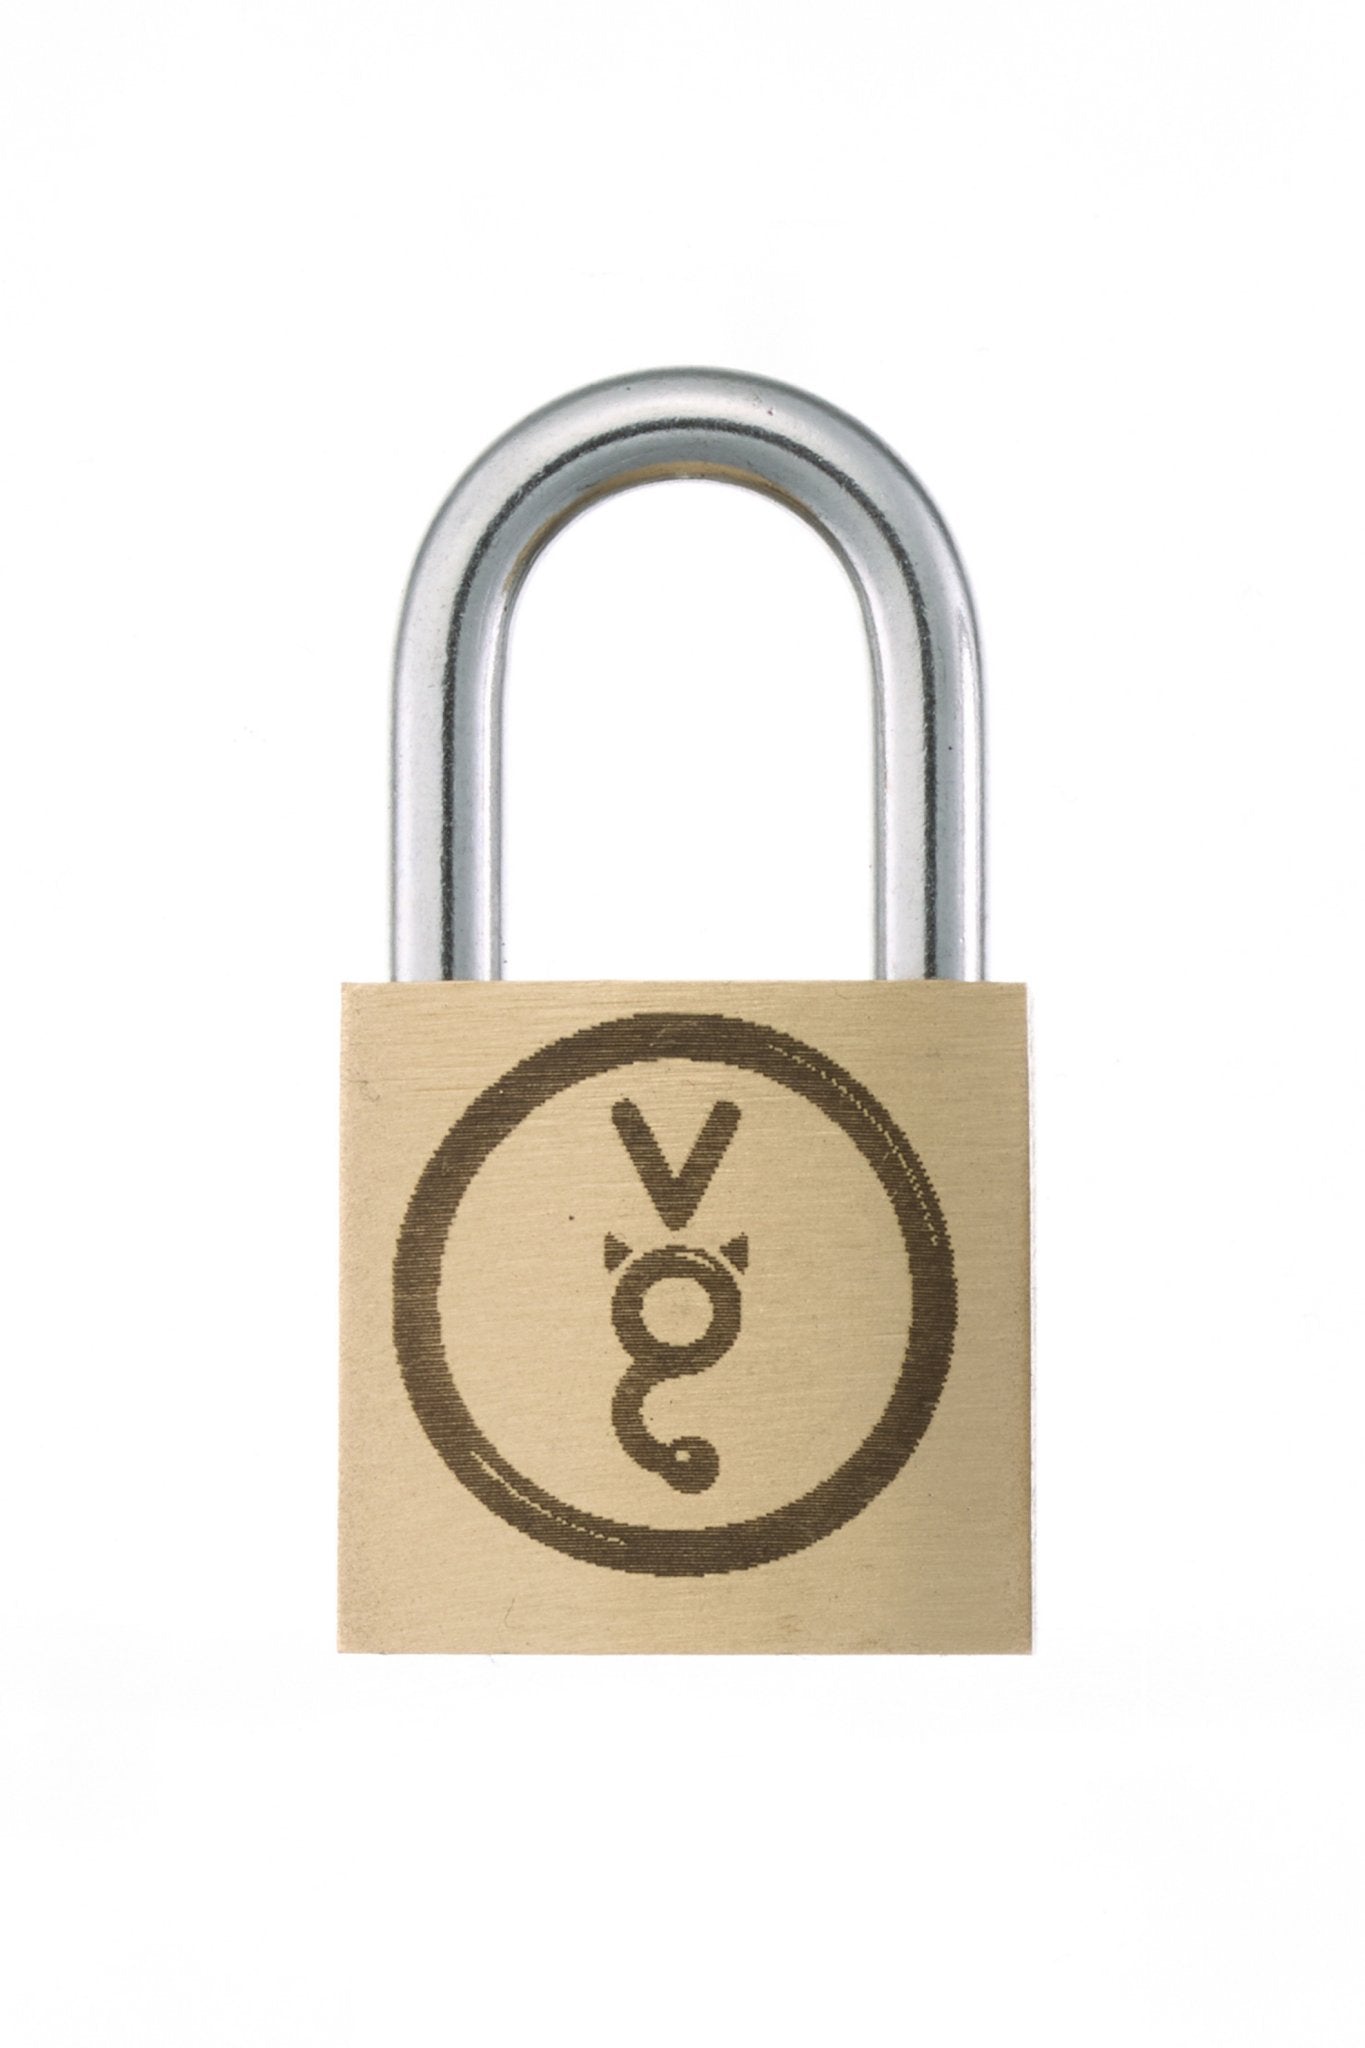 VG lock. Identical key padlocks - Vilain Garçon - VG lock. Identical key padlocks